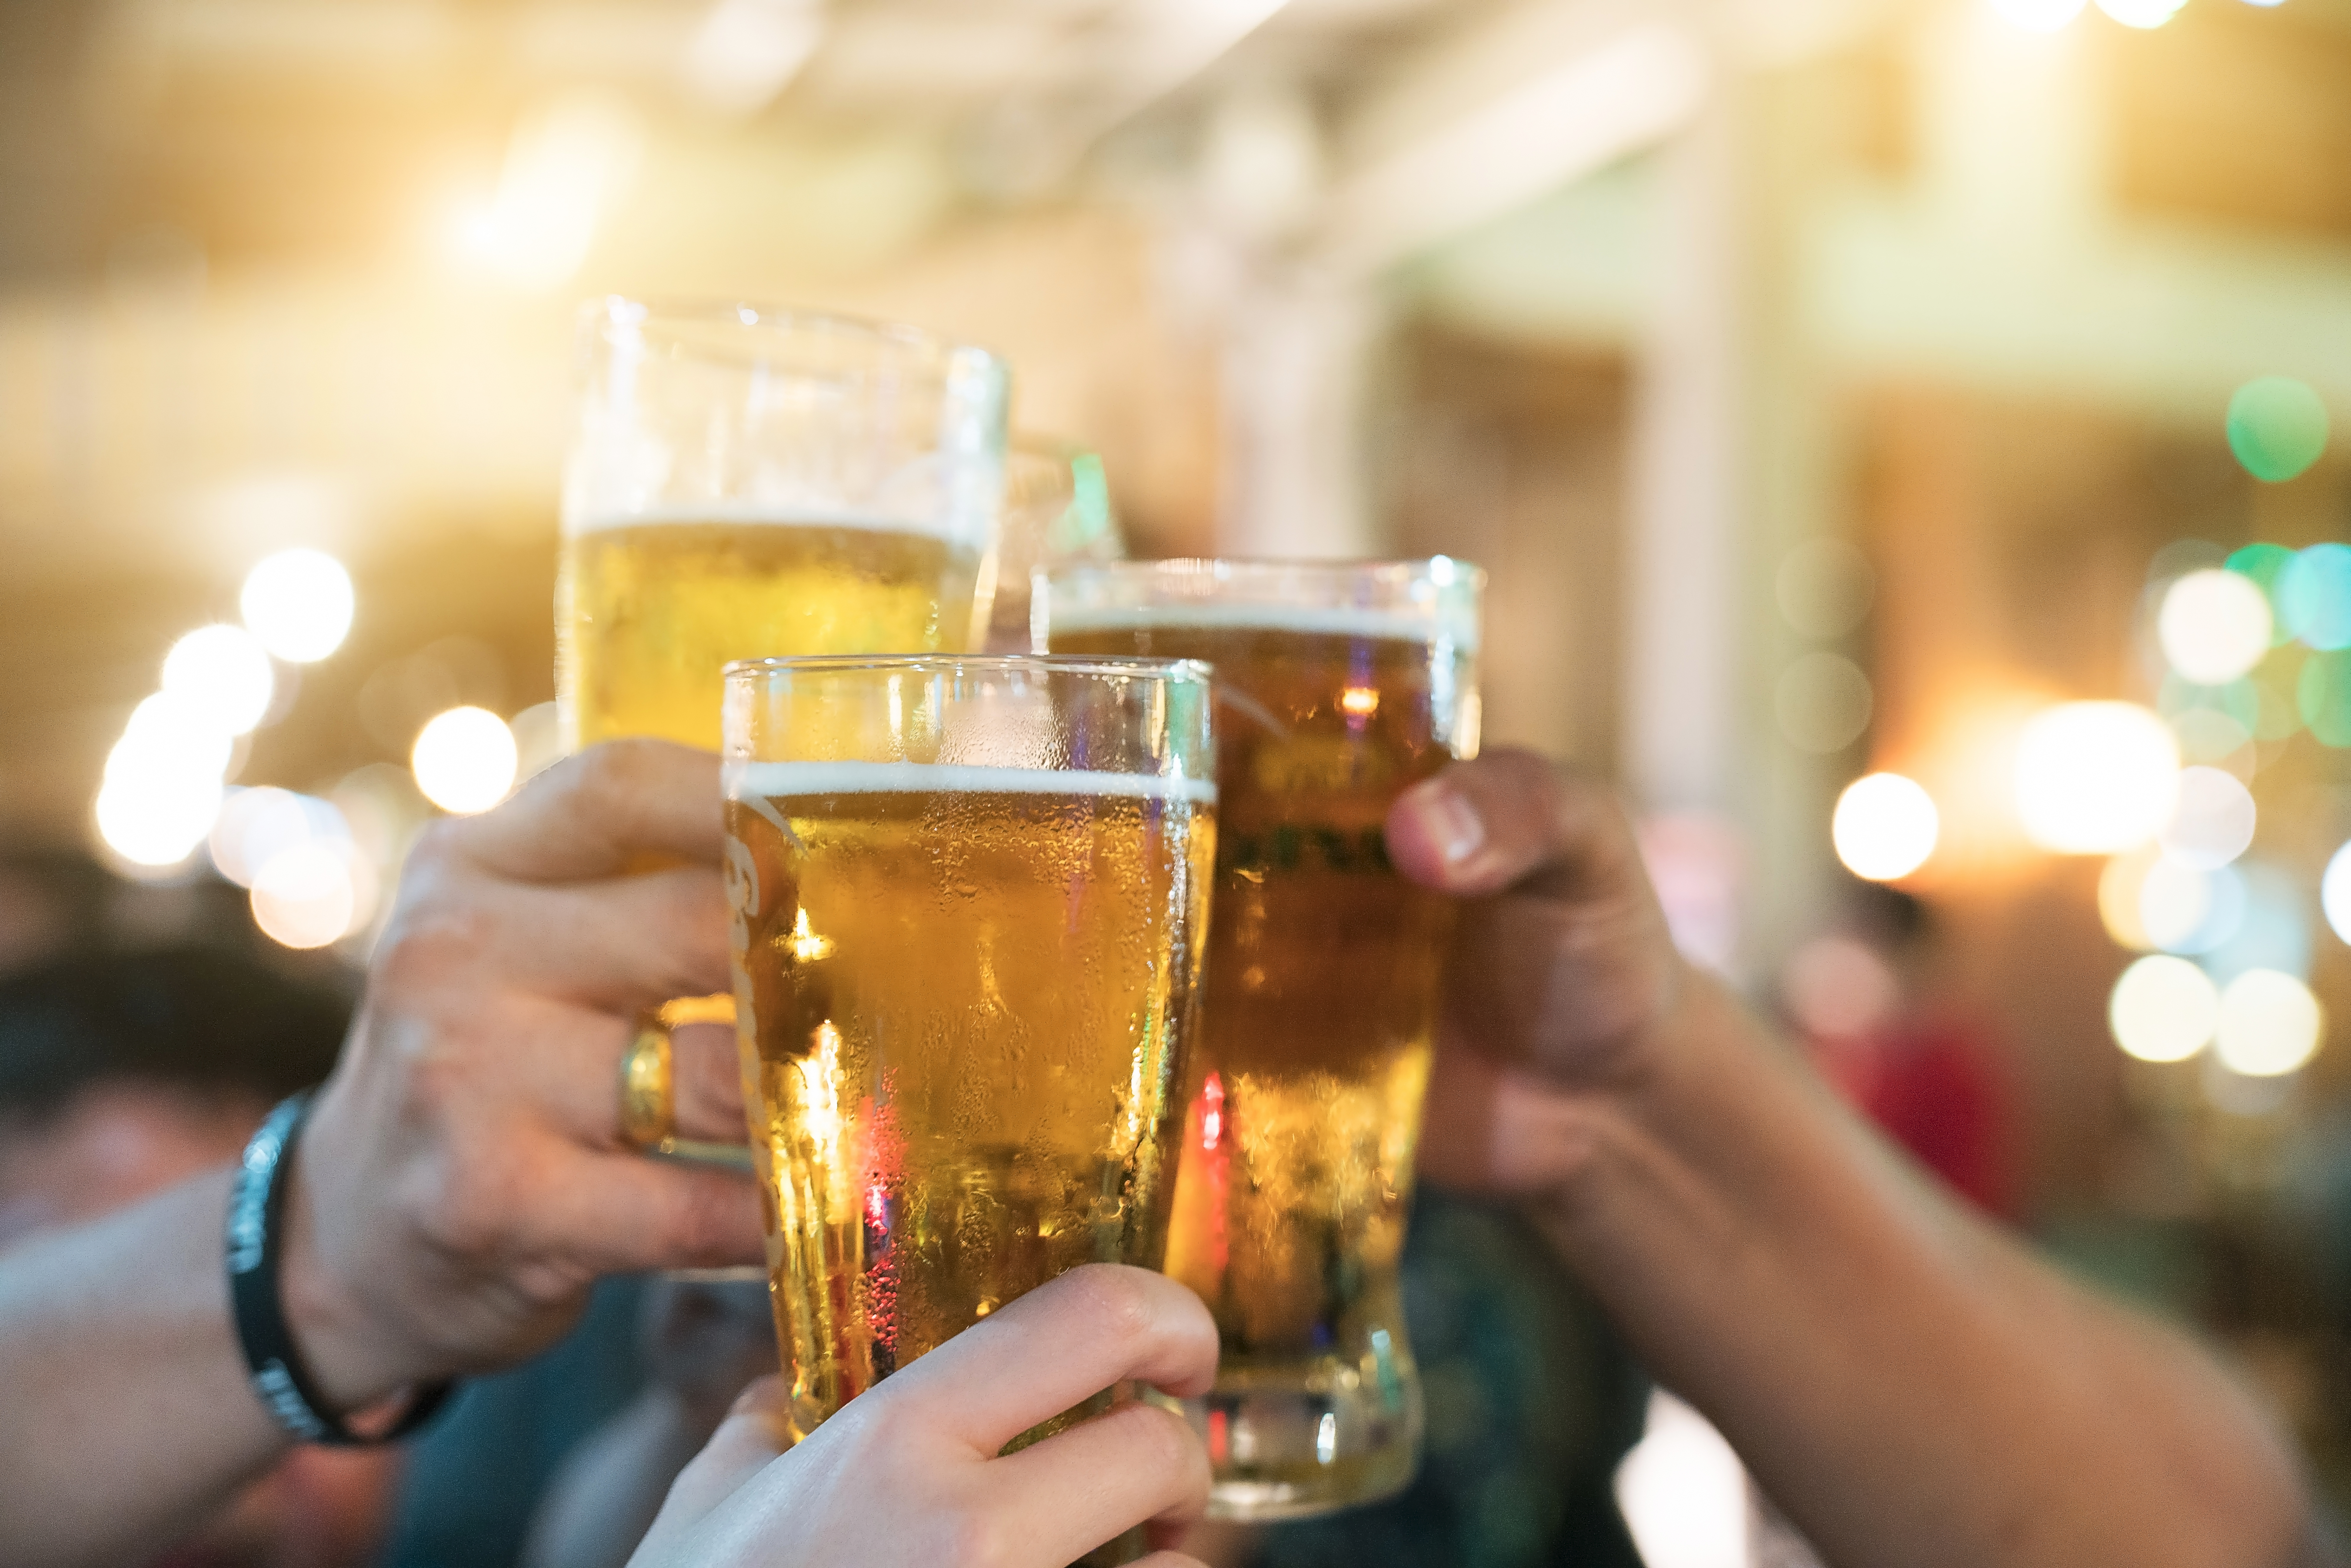 Es ist großartig, dass die Alkoholsteuer eingefroren wurde, aber mit einem kostenlosen Pint könnte man noch mehr feiern